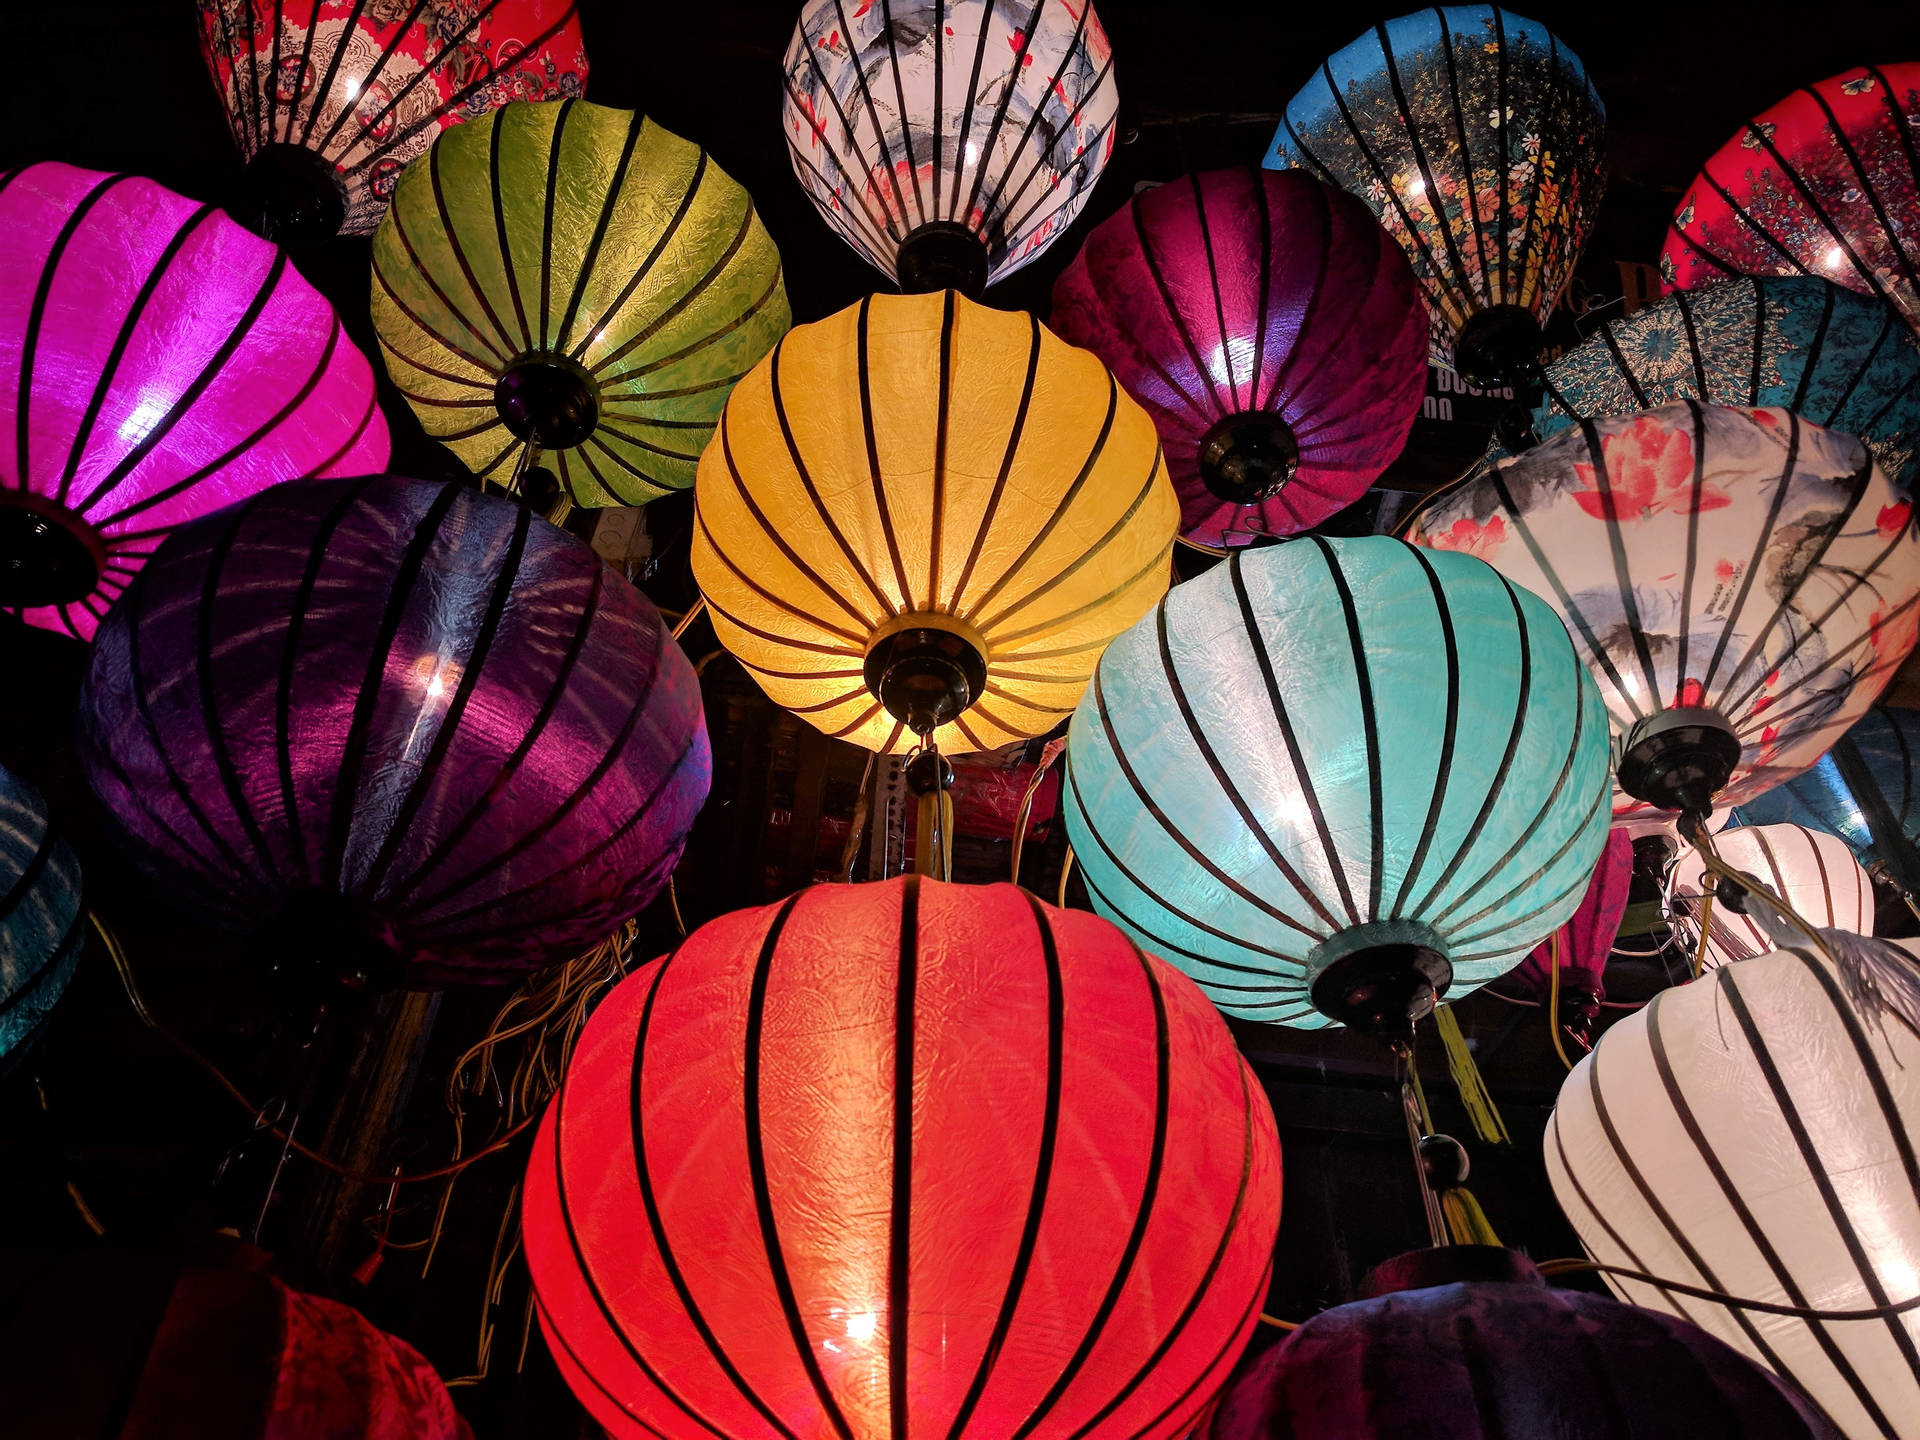 Illuminating Chinese Lantern In The Dark Background